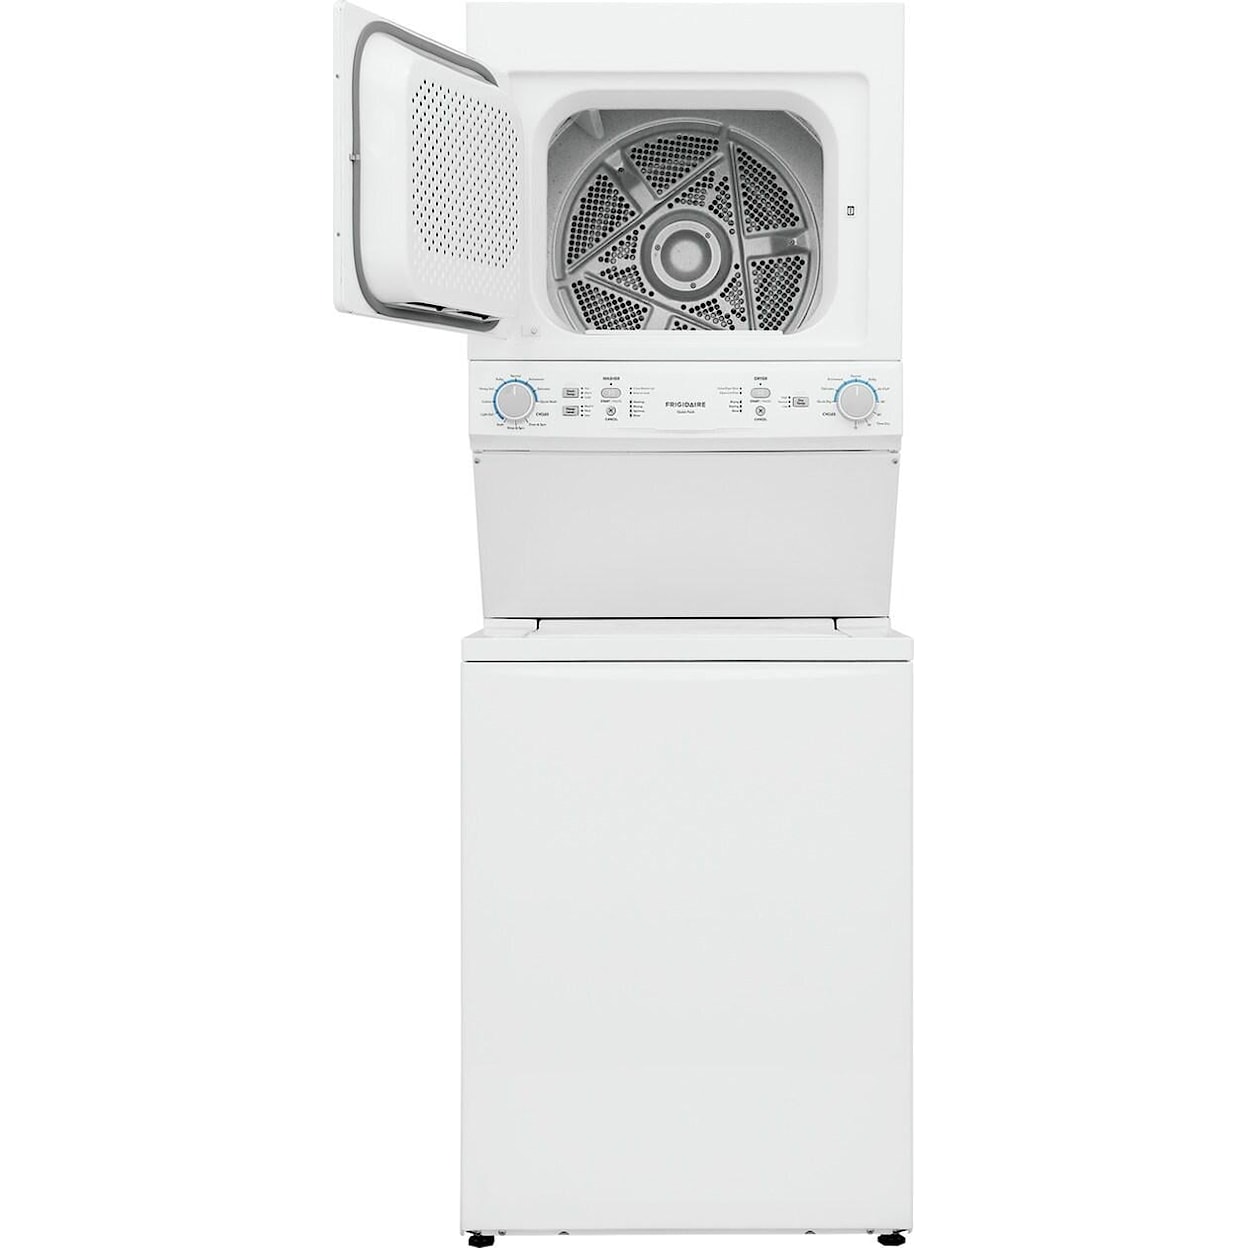 Frigidaire Laundry Washer & Dryer Combo